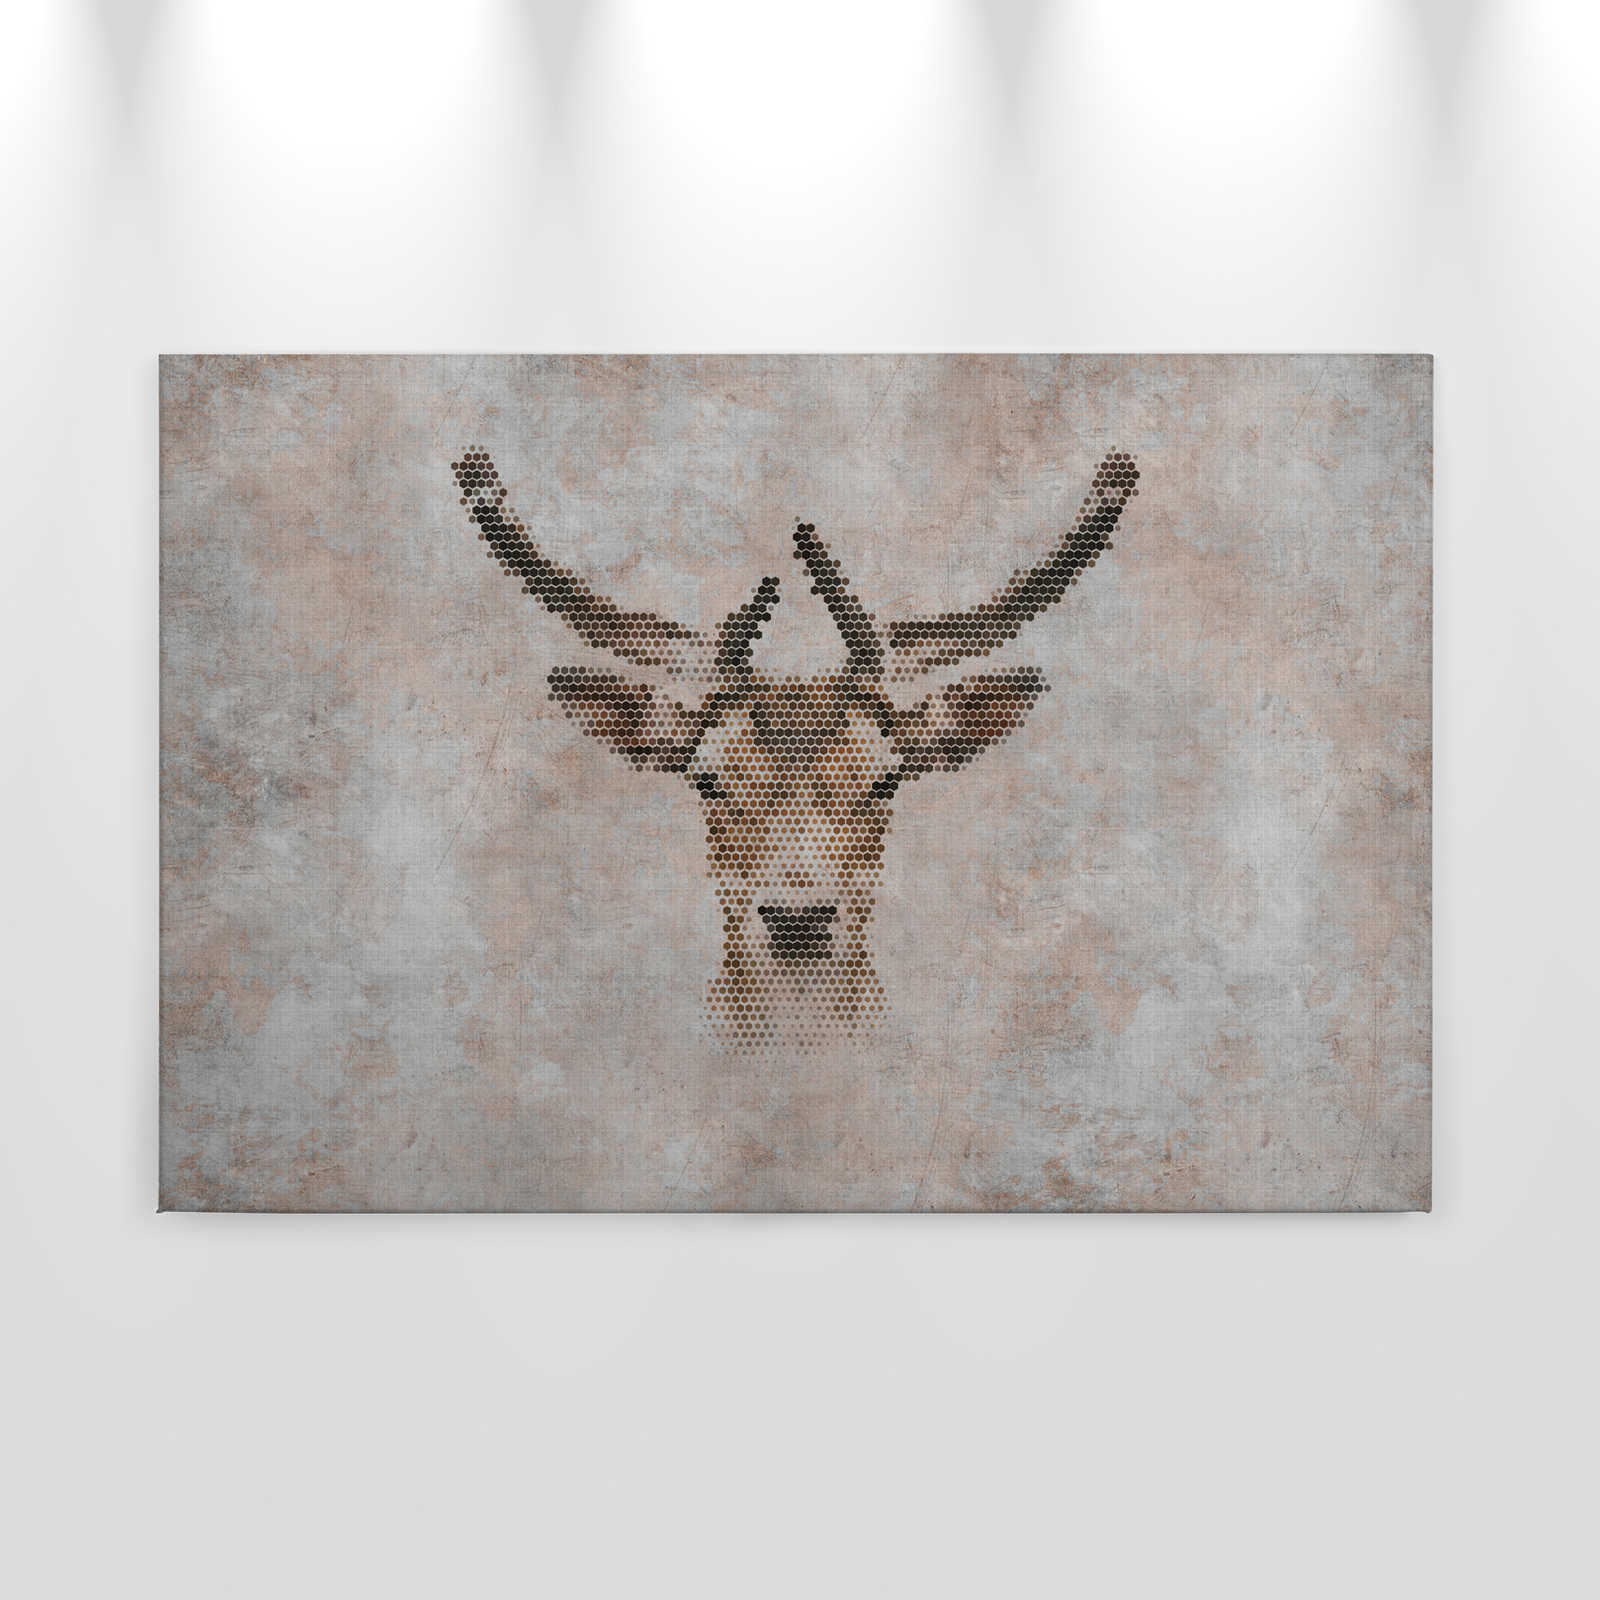             Big three 3 - Pintura en lienzo, aspecto concreto con ciervo en estructura de lino natural - 0,90 m x 0,60 m
        